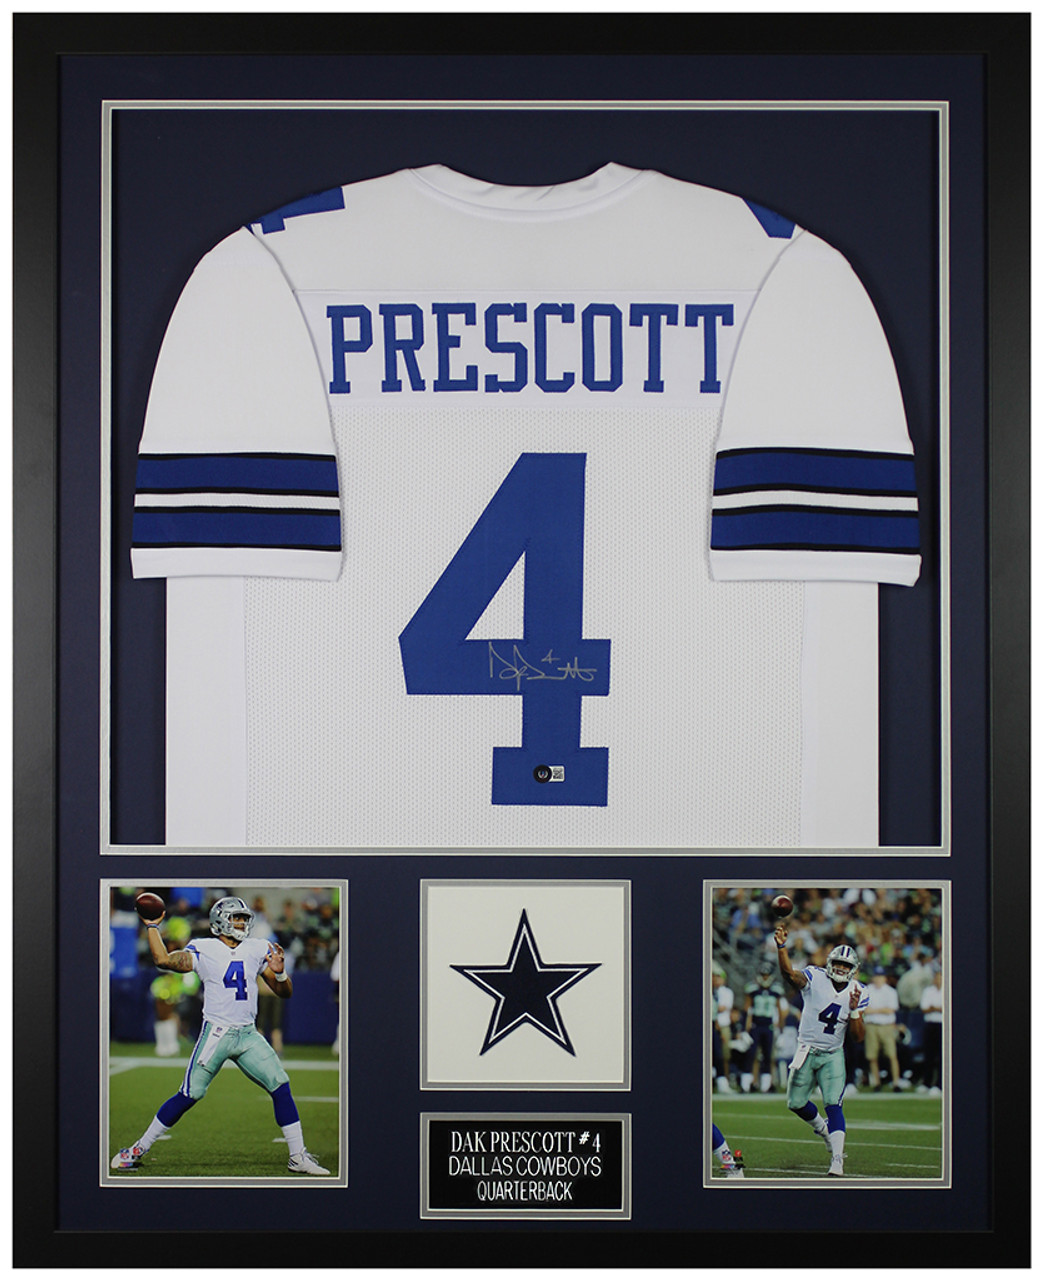 Dak Prescott Dallas Cowboys Replica Jersey NFL Football Blue Size L